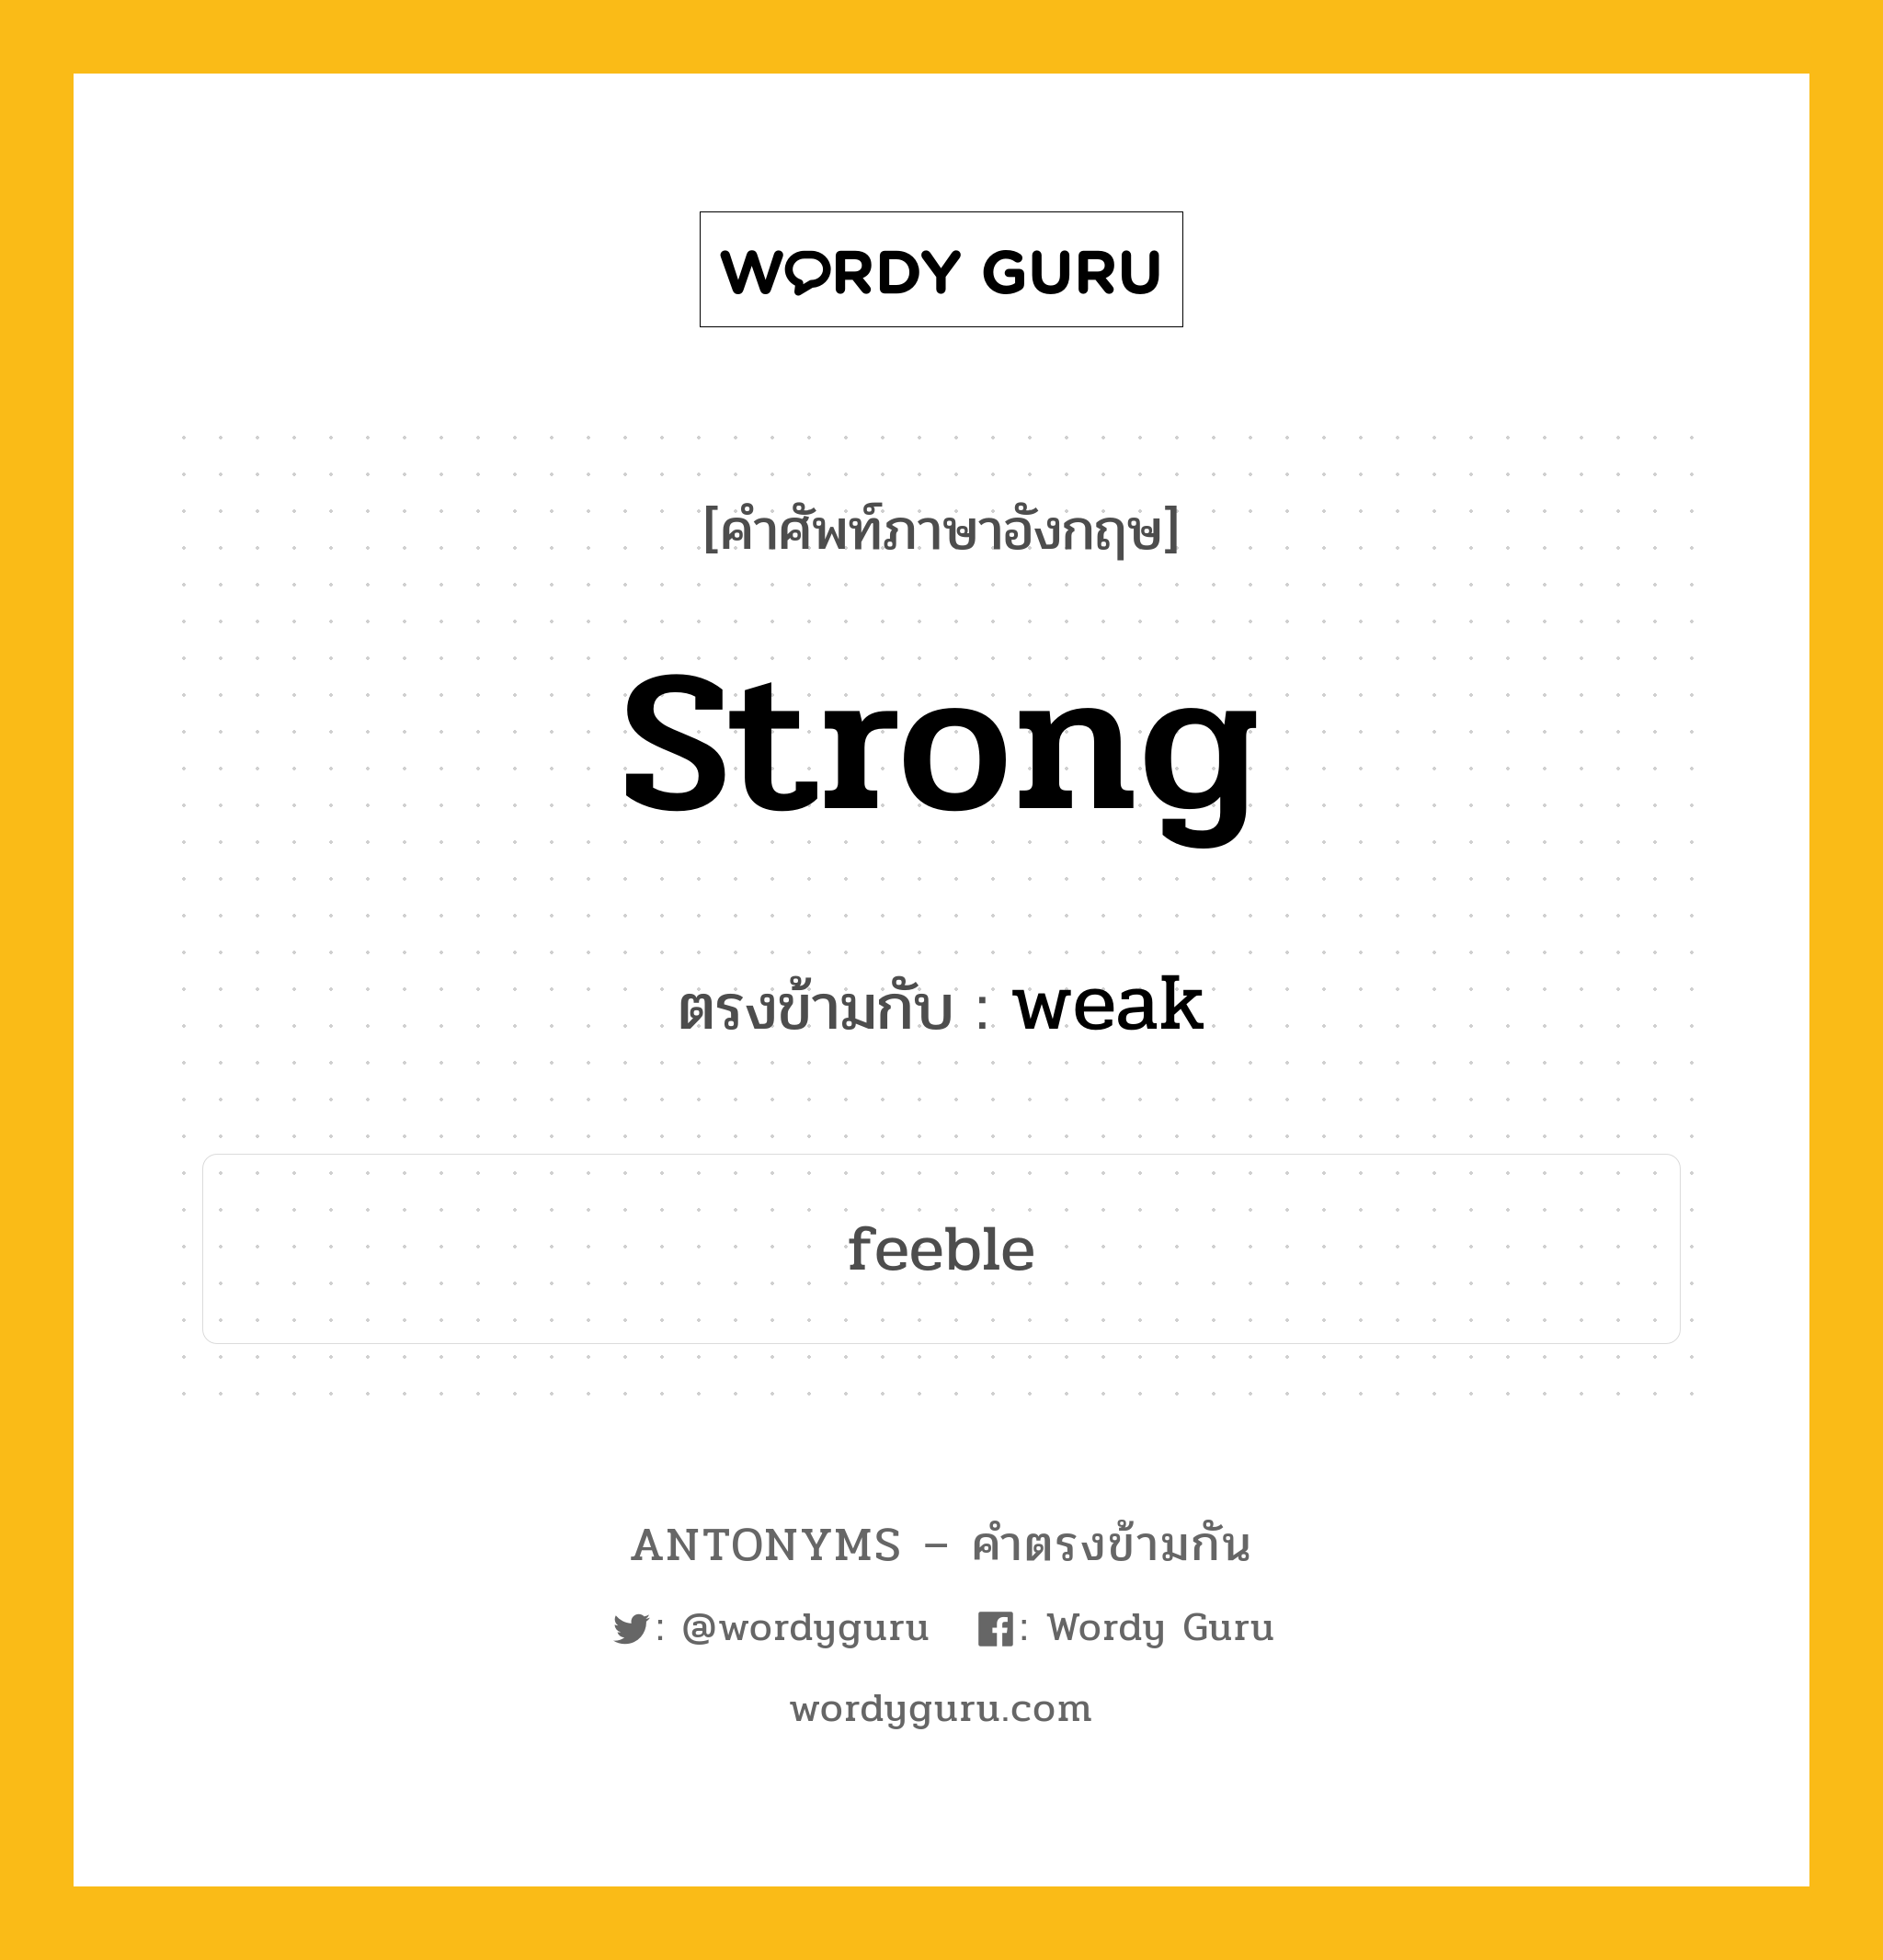 strong เป็นคำตรงข้ามกับคำไหนบ้าง?, คำศัพท์ภาษาอังกฤษ strong ตรงข้ามกับ weak หมวด weak